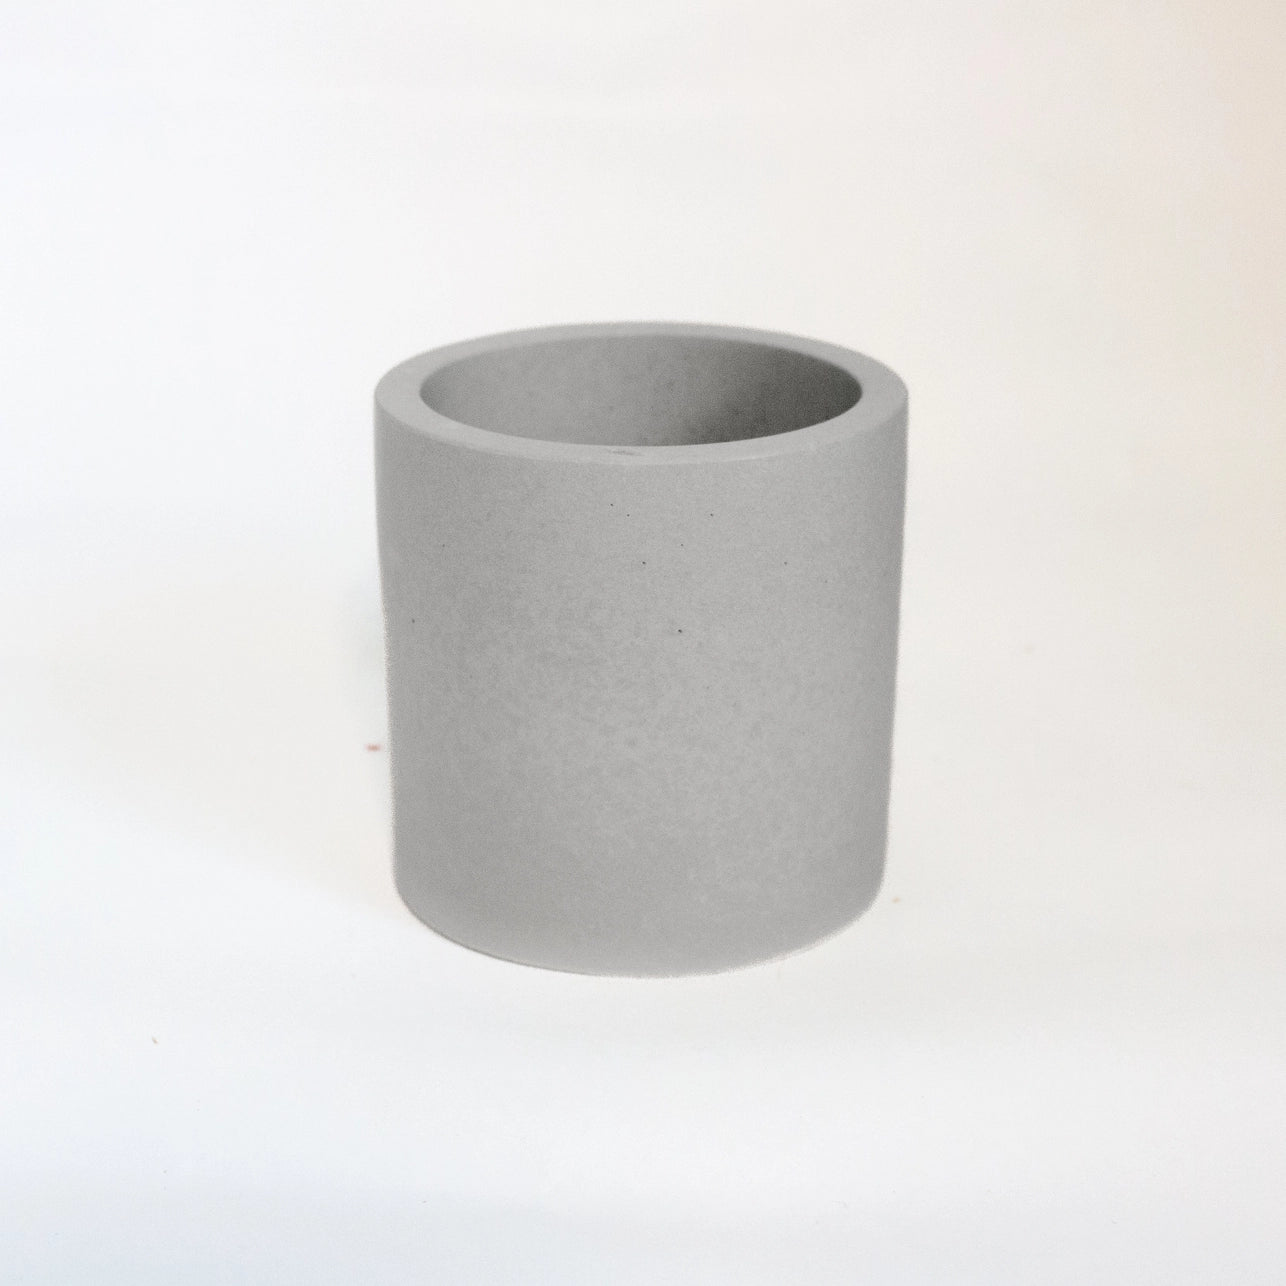 Empty Concrete Candle Jar - 10oz